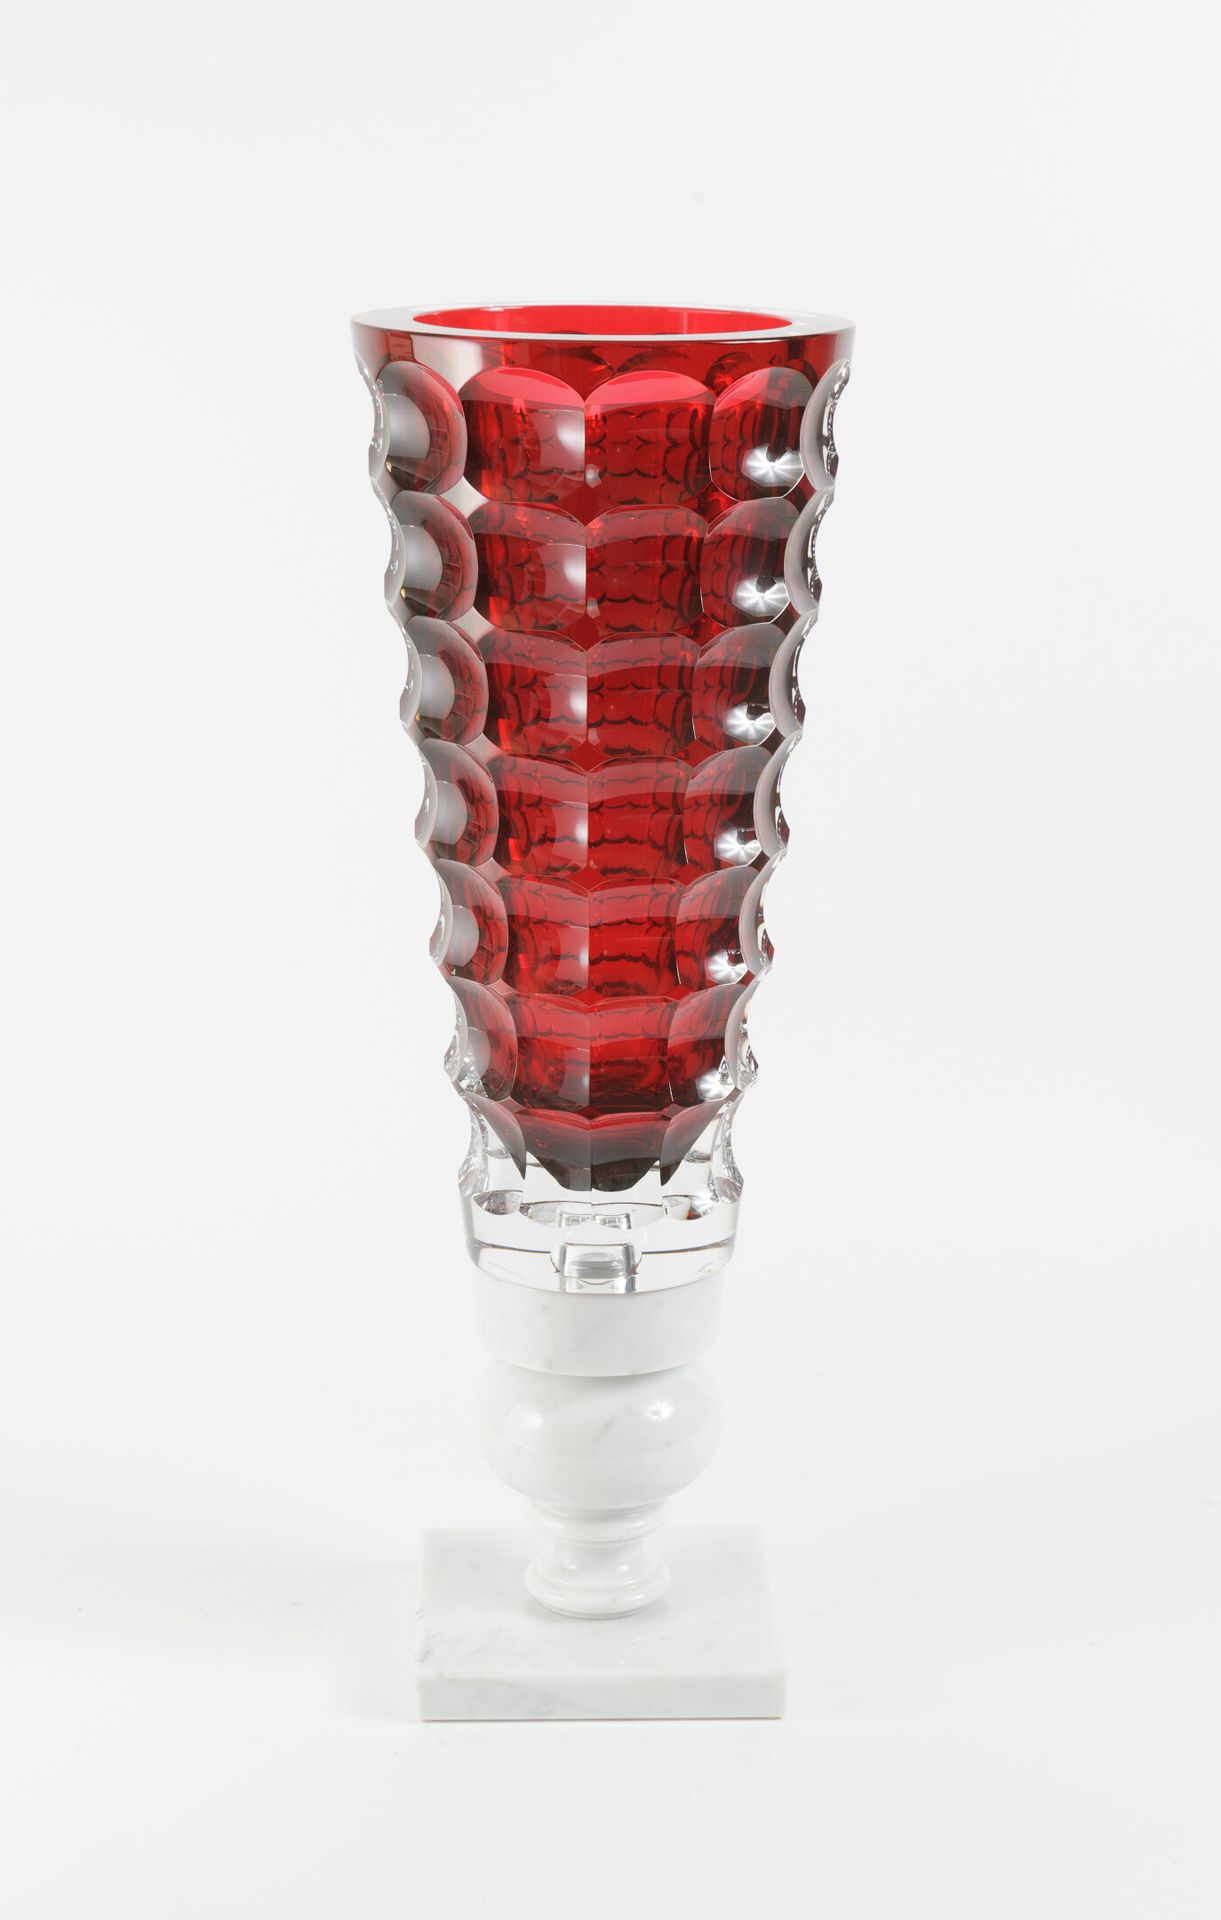 Marcel WANDERS (1963) & BACCARAT Rote Vase-Könige, 2010. 

Kristallvase auf eine&hellip;